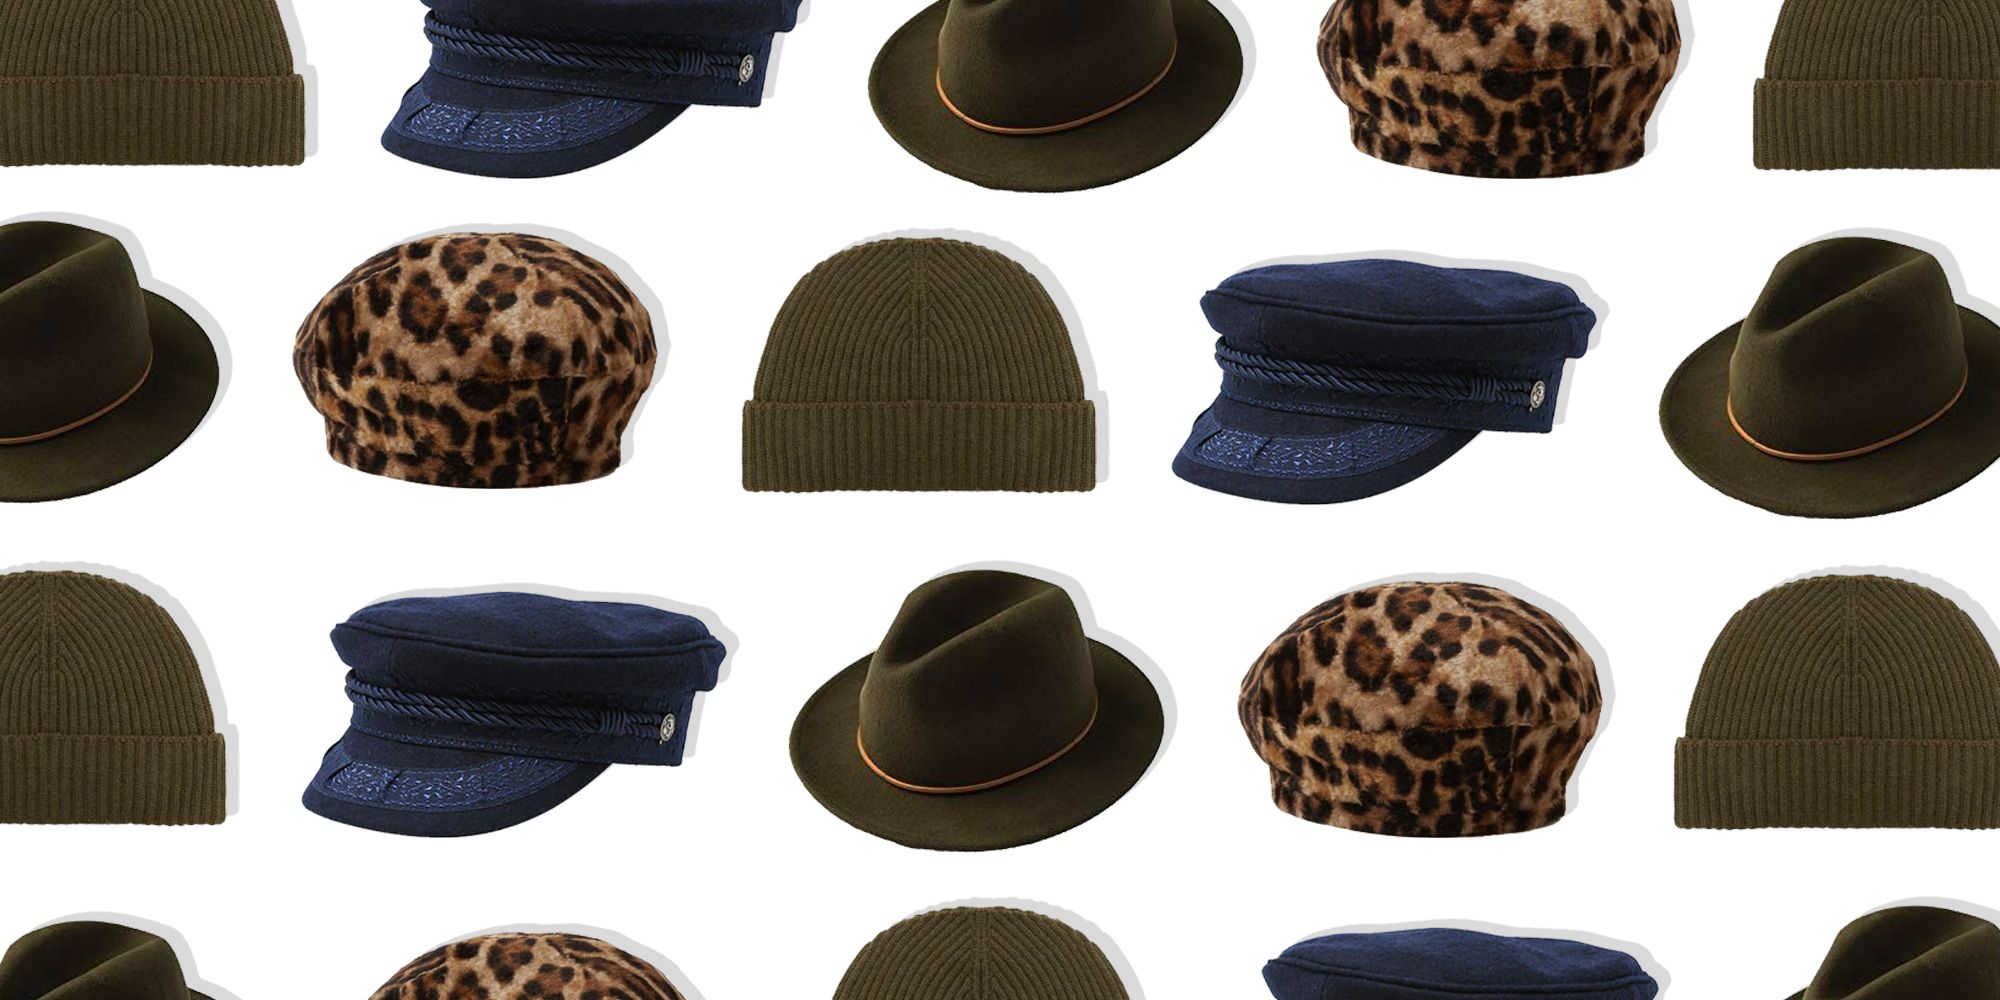 best hats for women